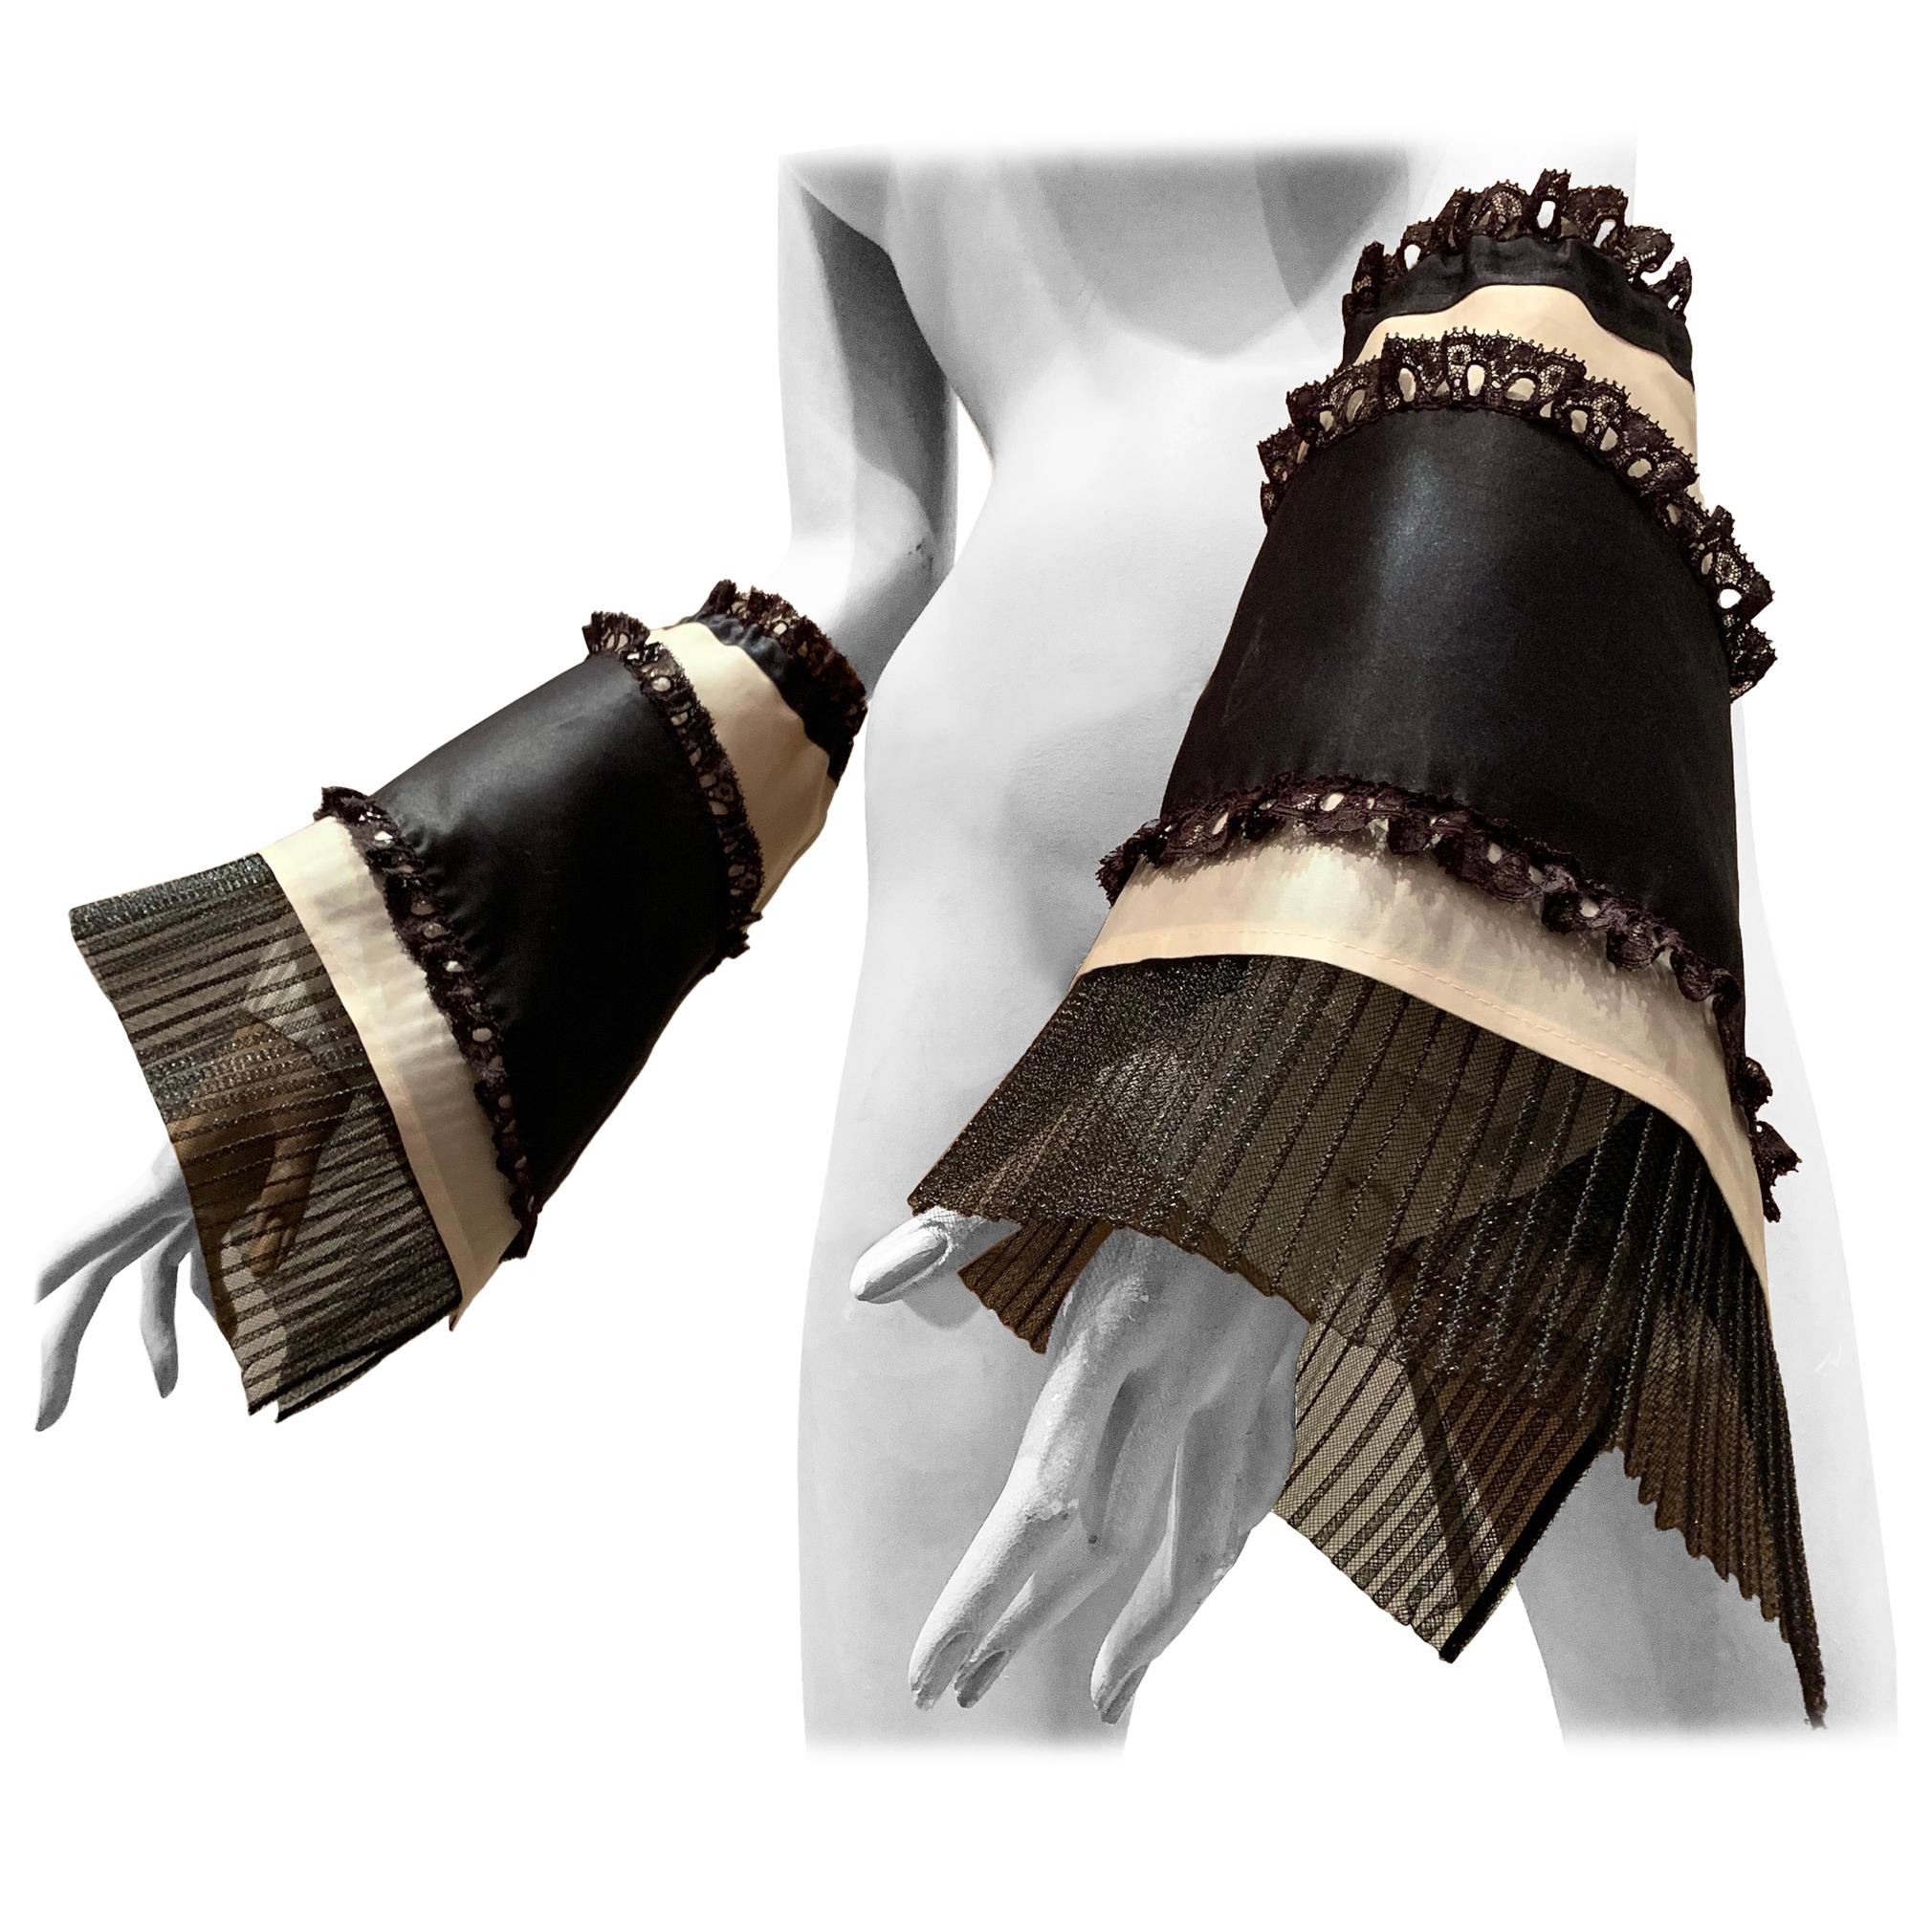 Créations de torse Gauntlets à manches chemise noirs et blancs avec volants en organza et dentelle en vente